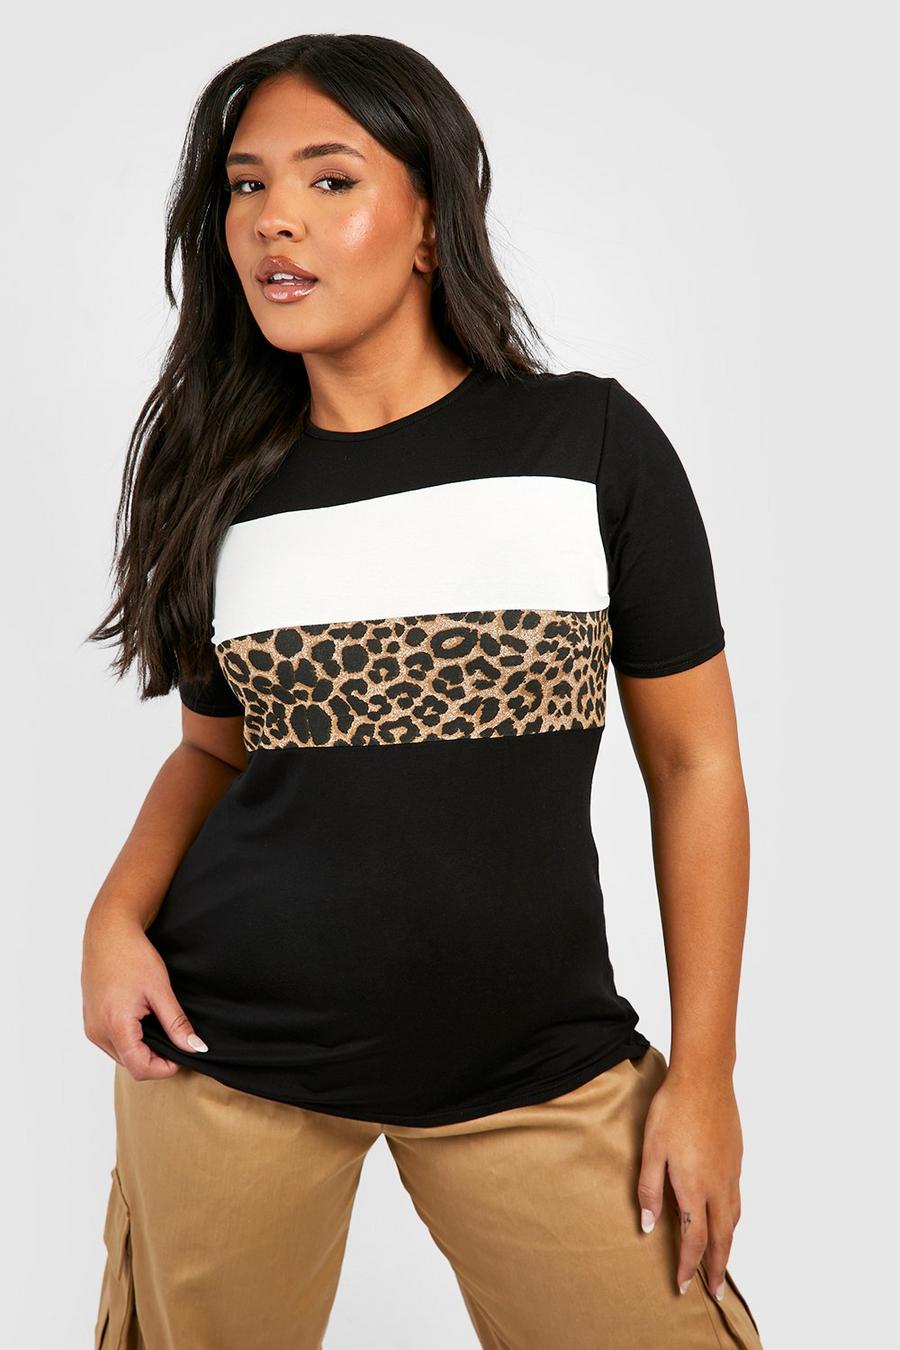 T-shirt Plus Size leopardata con pannelli a contrasto, Nero black